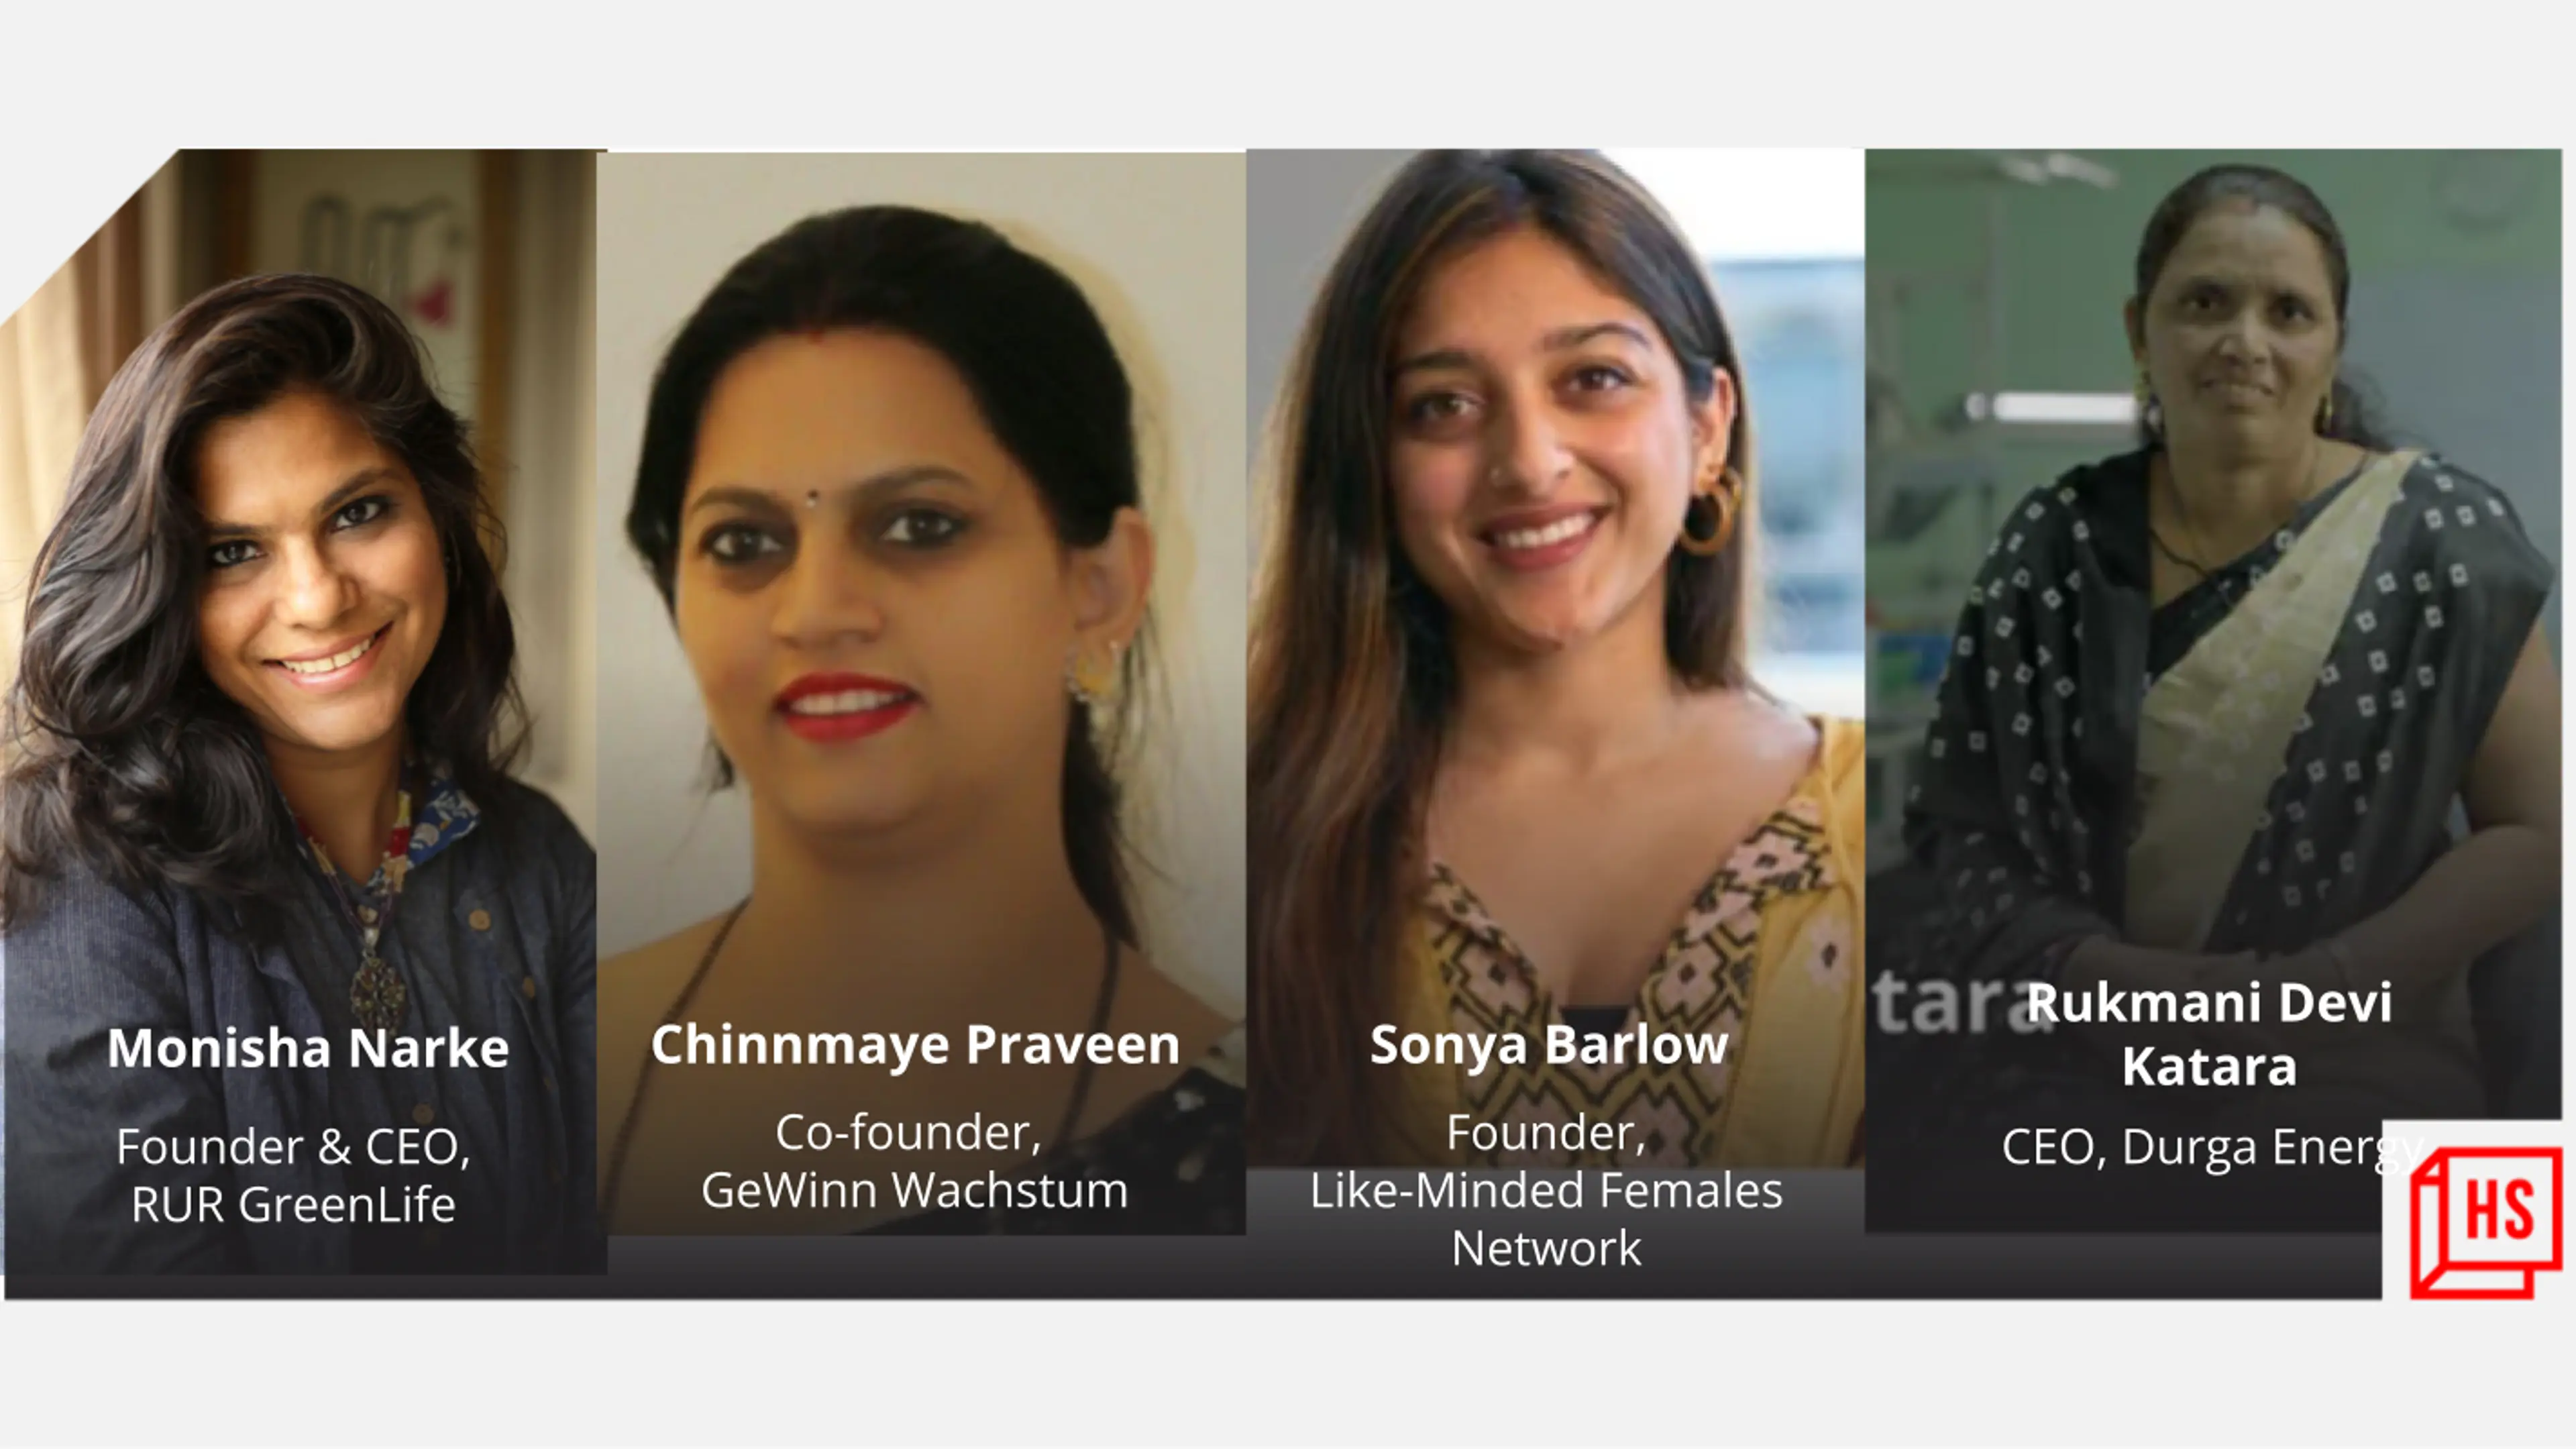 Meet 4 women using their entrepreneurial skills for social good
